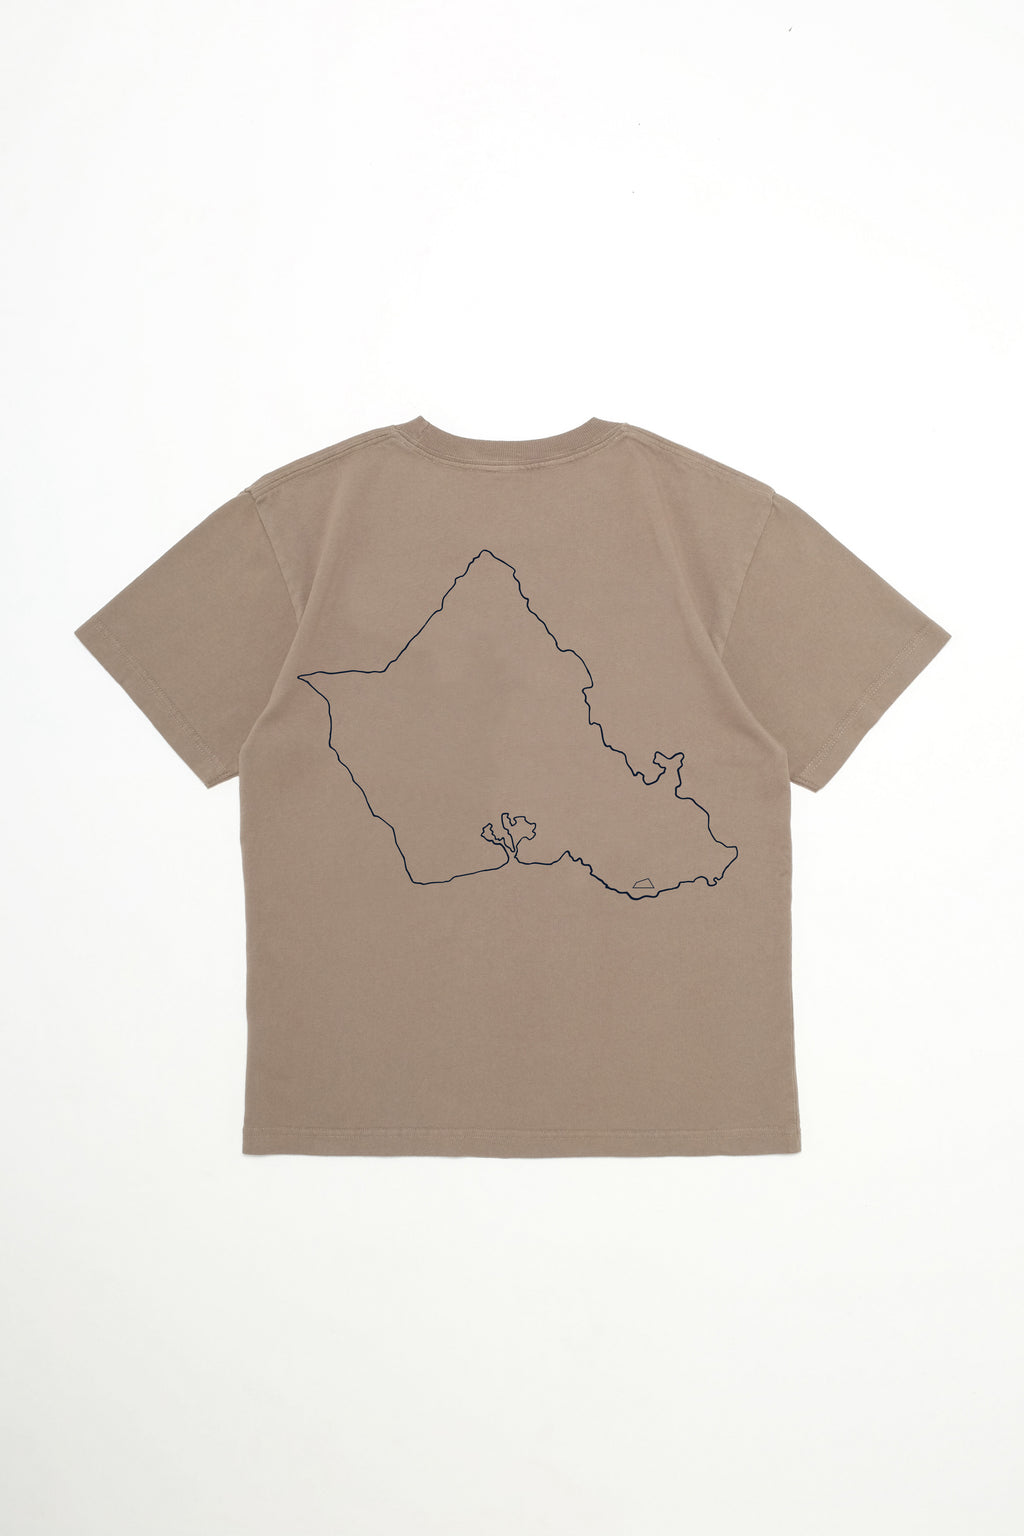 T-Shirt - O'ahu Outline - Greige